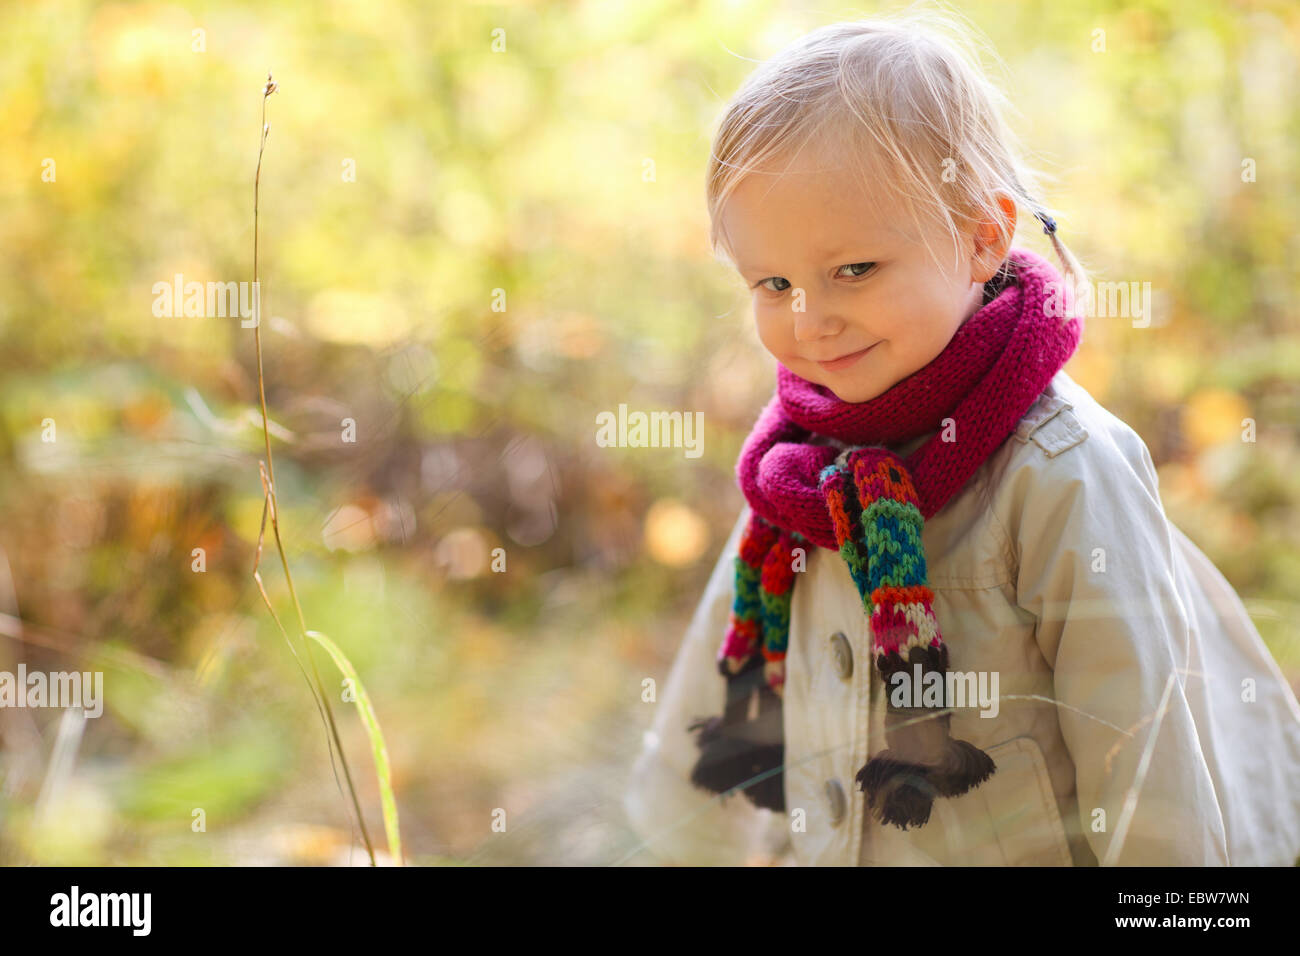 kleines Mädchen mit Kopftuch Stockfotografie - Alamy